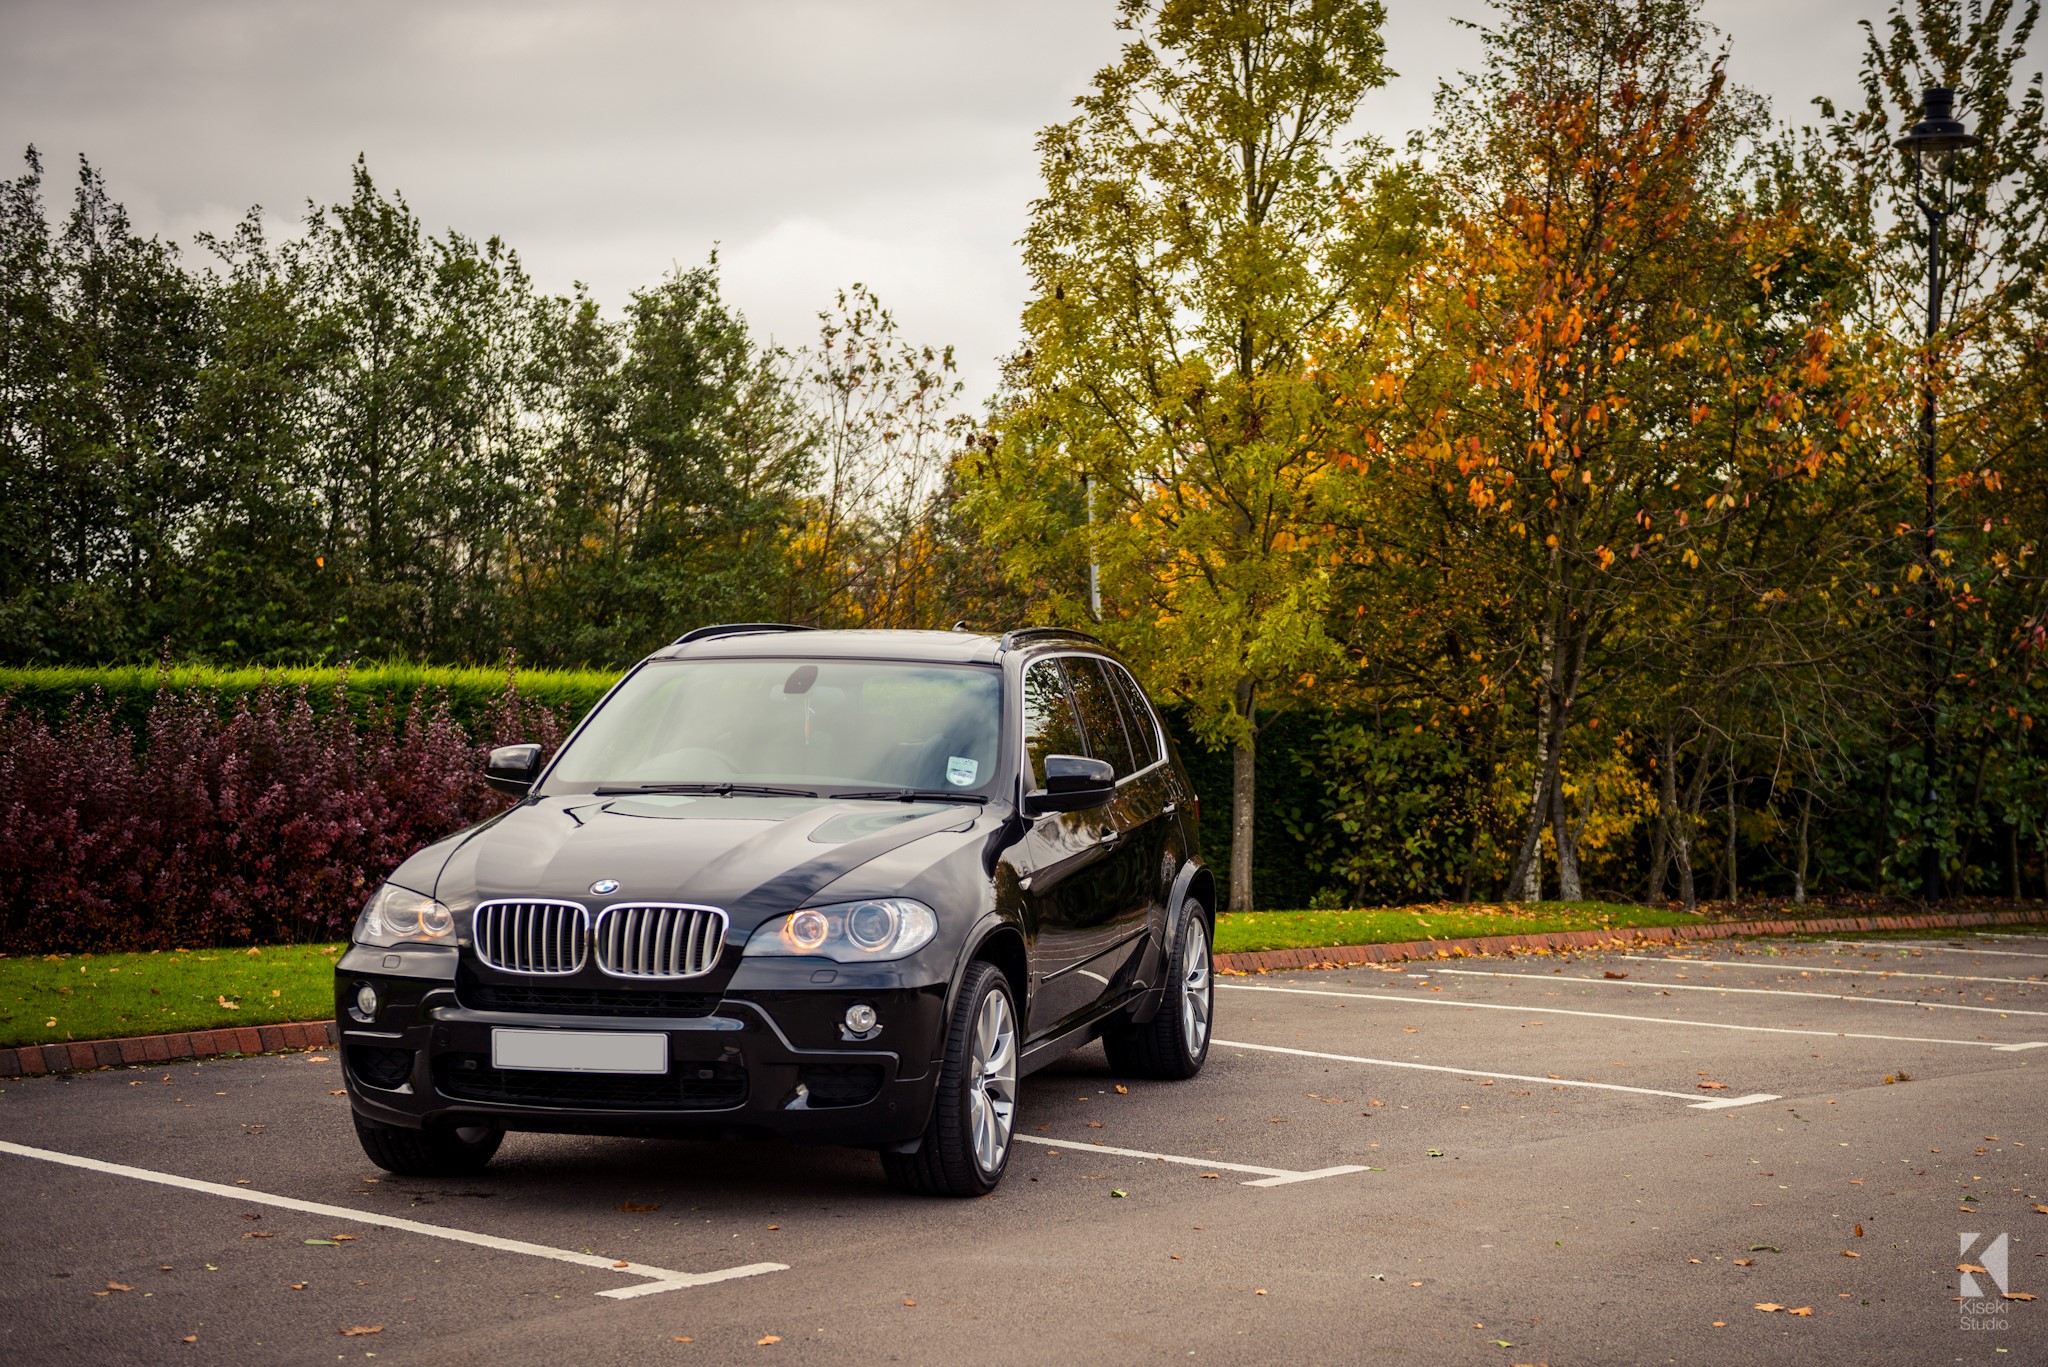 BMW X5 in autumn